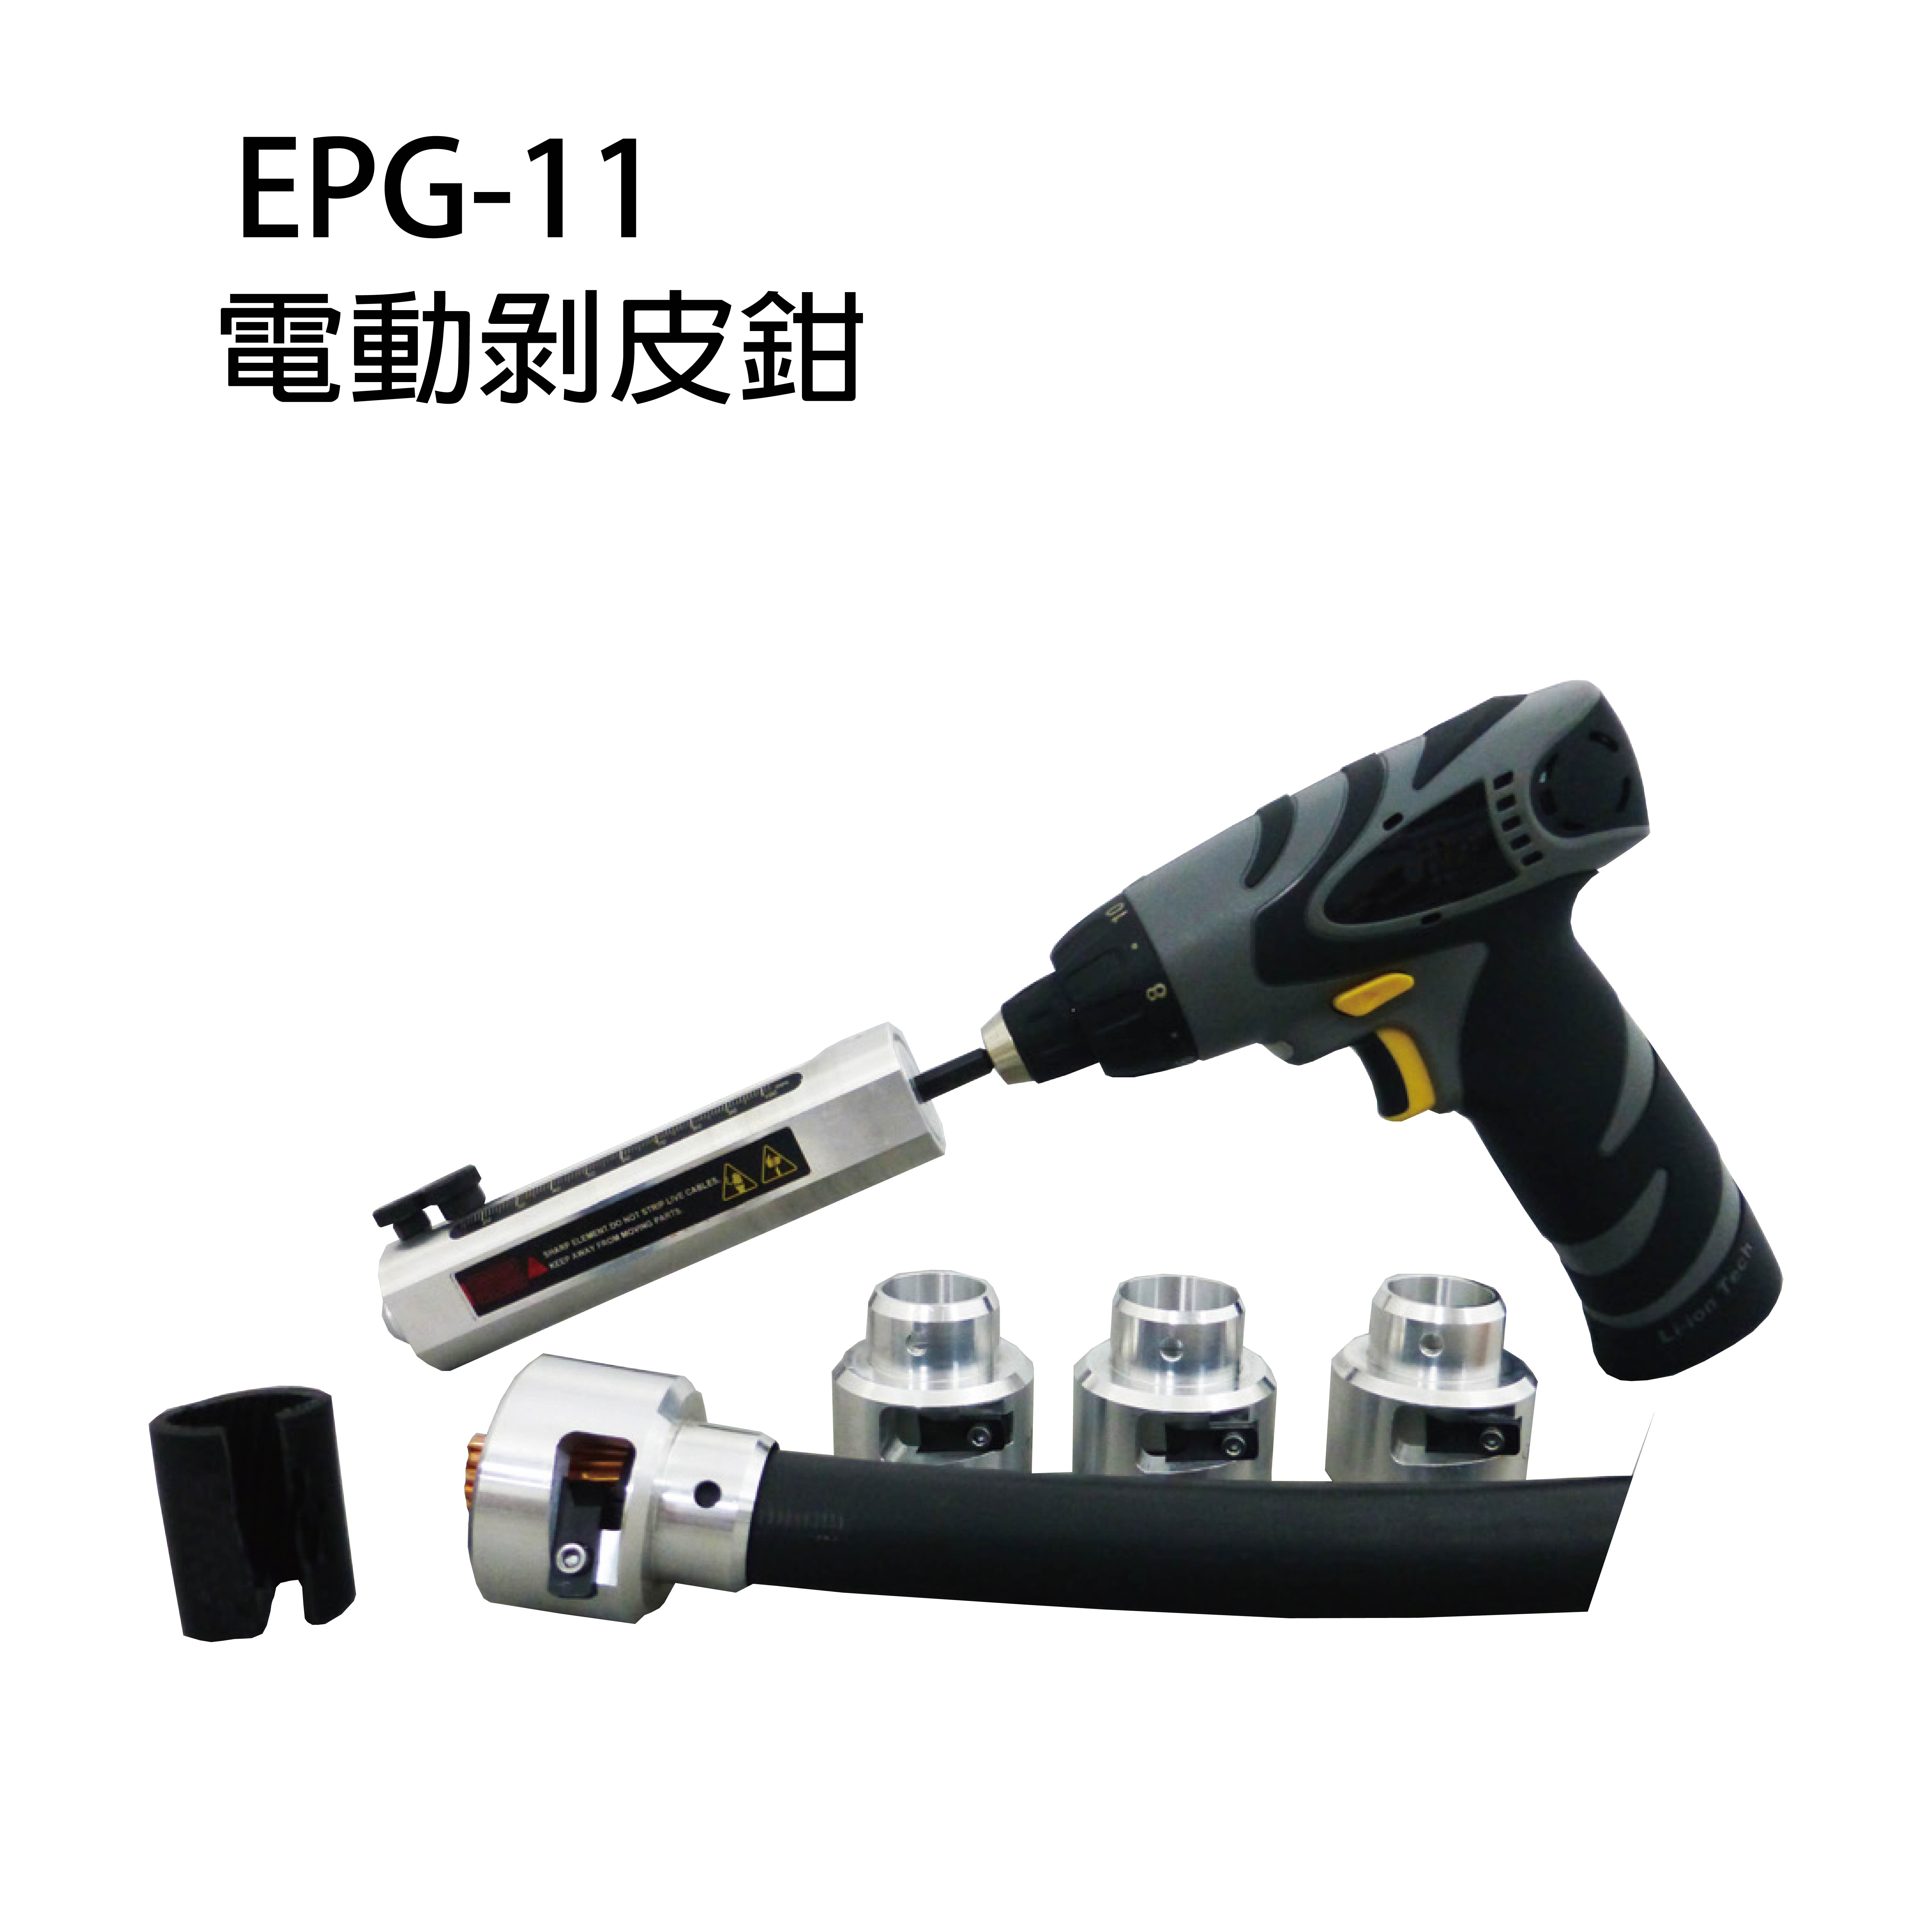 EPG-11, EPG-11S, EPG-11B 電動剝皮鉗-EPG-11, EPG-11S, EPG-11B